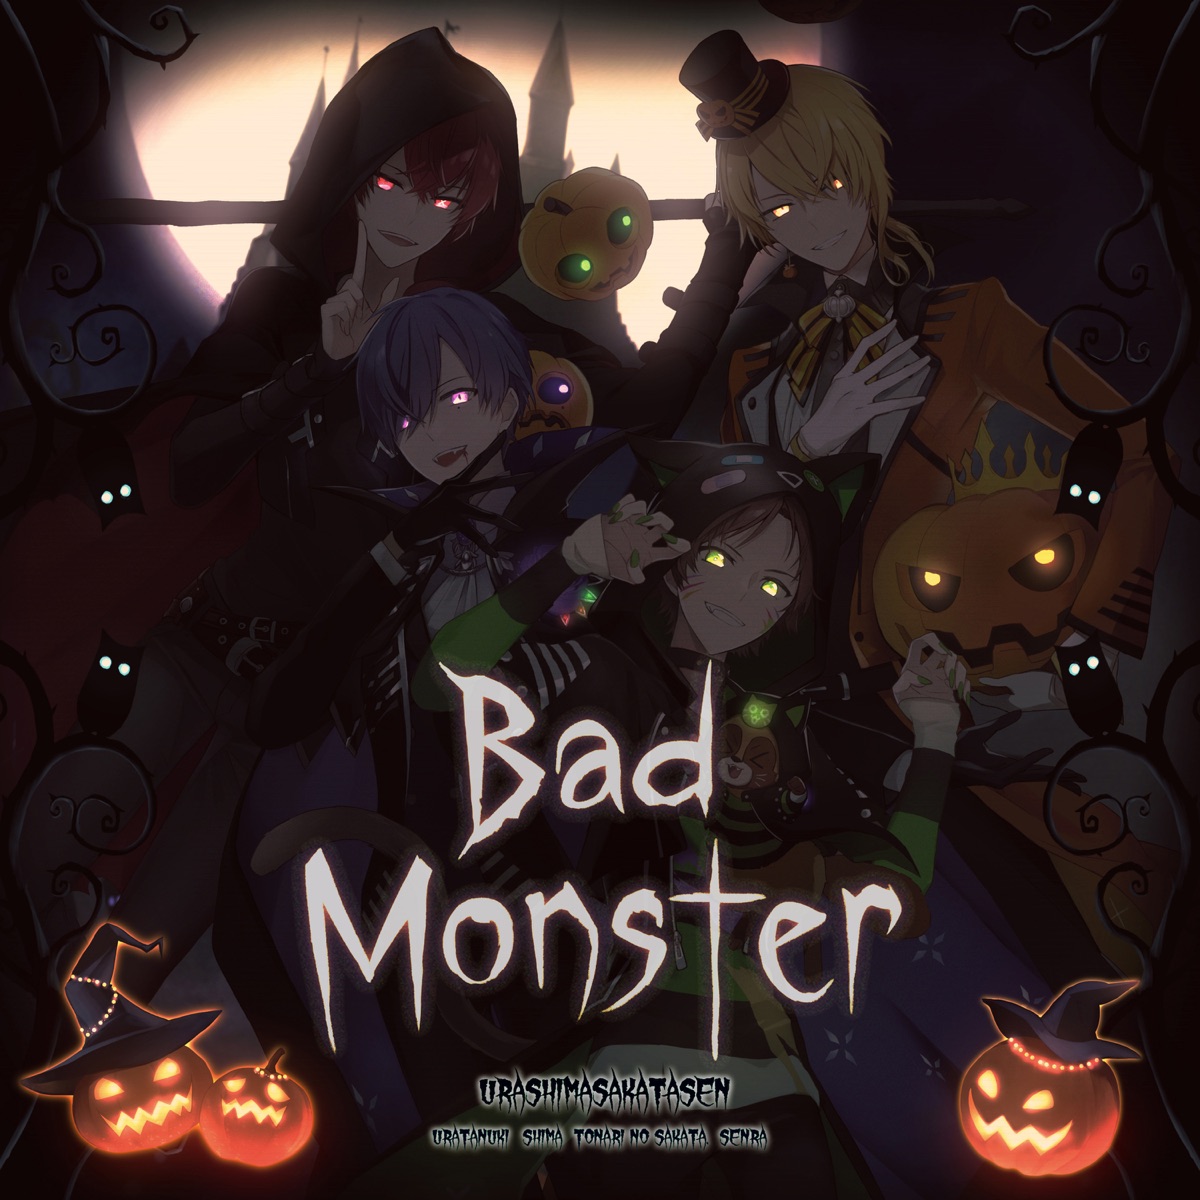 Cover art for『Urashimasakatasen - Bad Monster』from the release『Bad Monster』